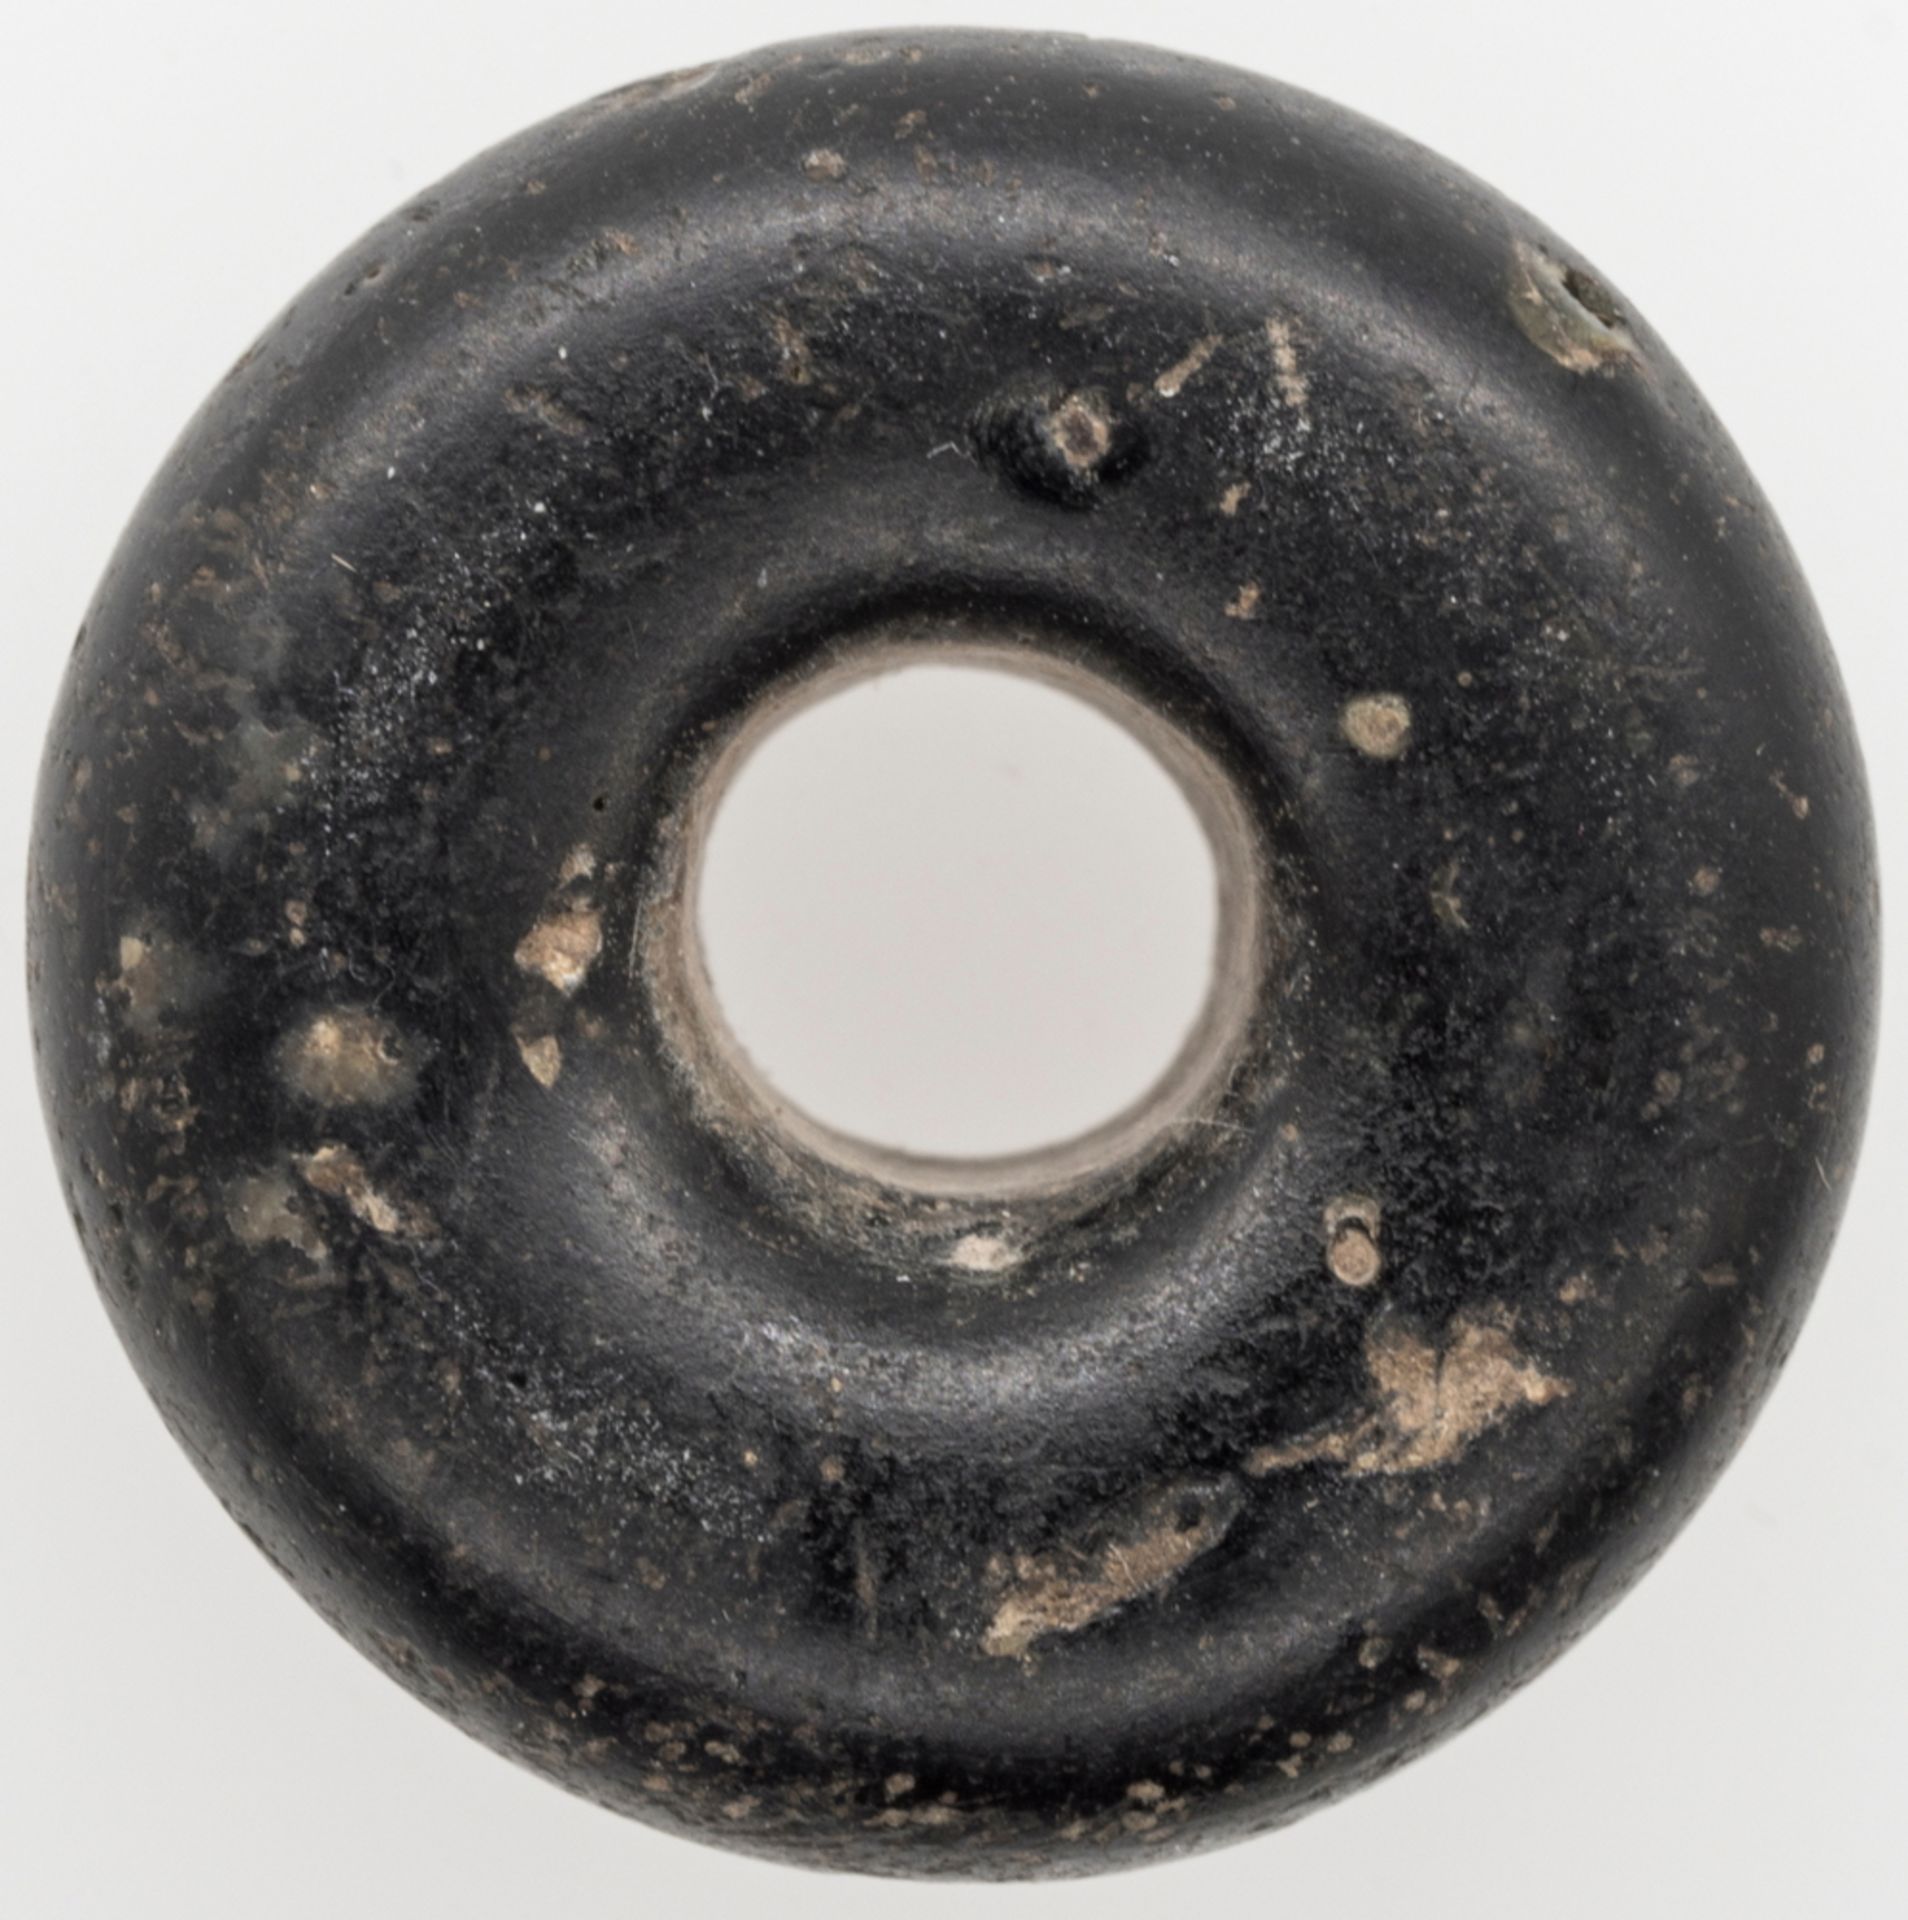 Spinnwirtel?, Material: Stein, Durchmesser: ca.19,7 mm, Stärke: ca. 9,3 mm. Gewicht: ca. 5,1 g. - Bild 2 aus 2